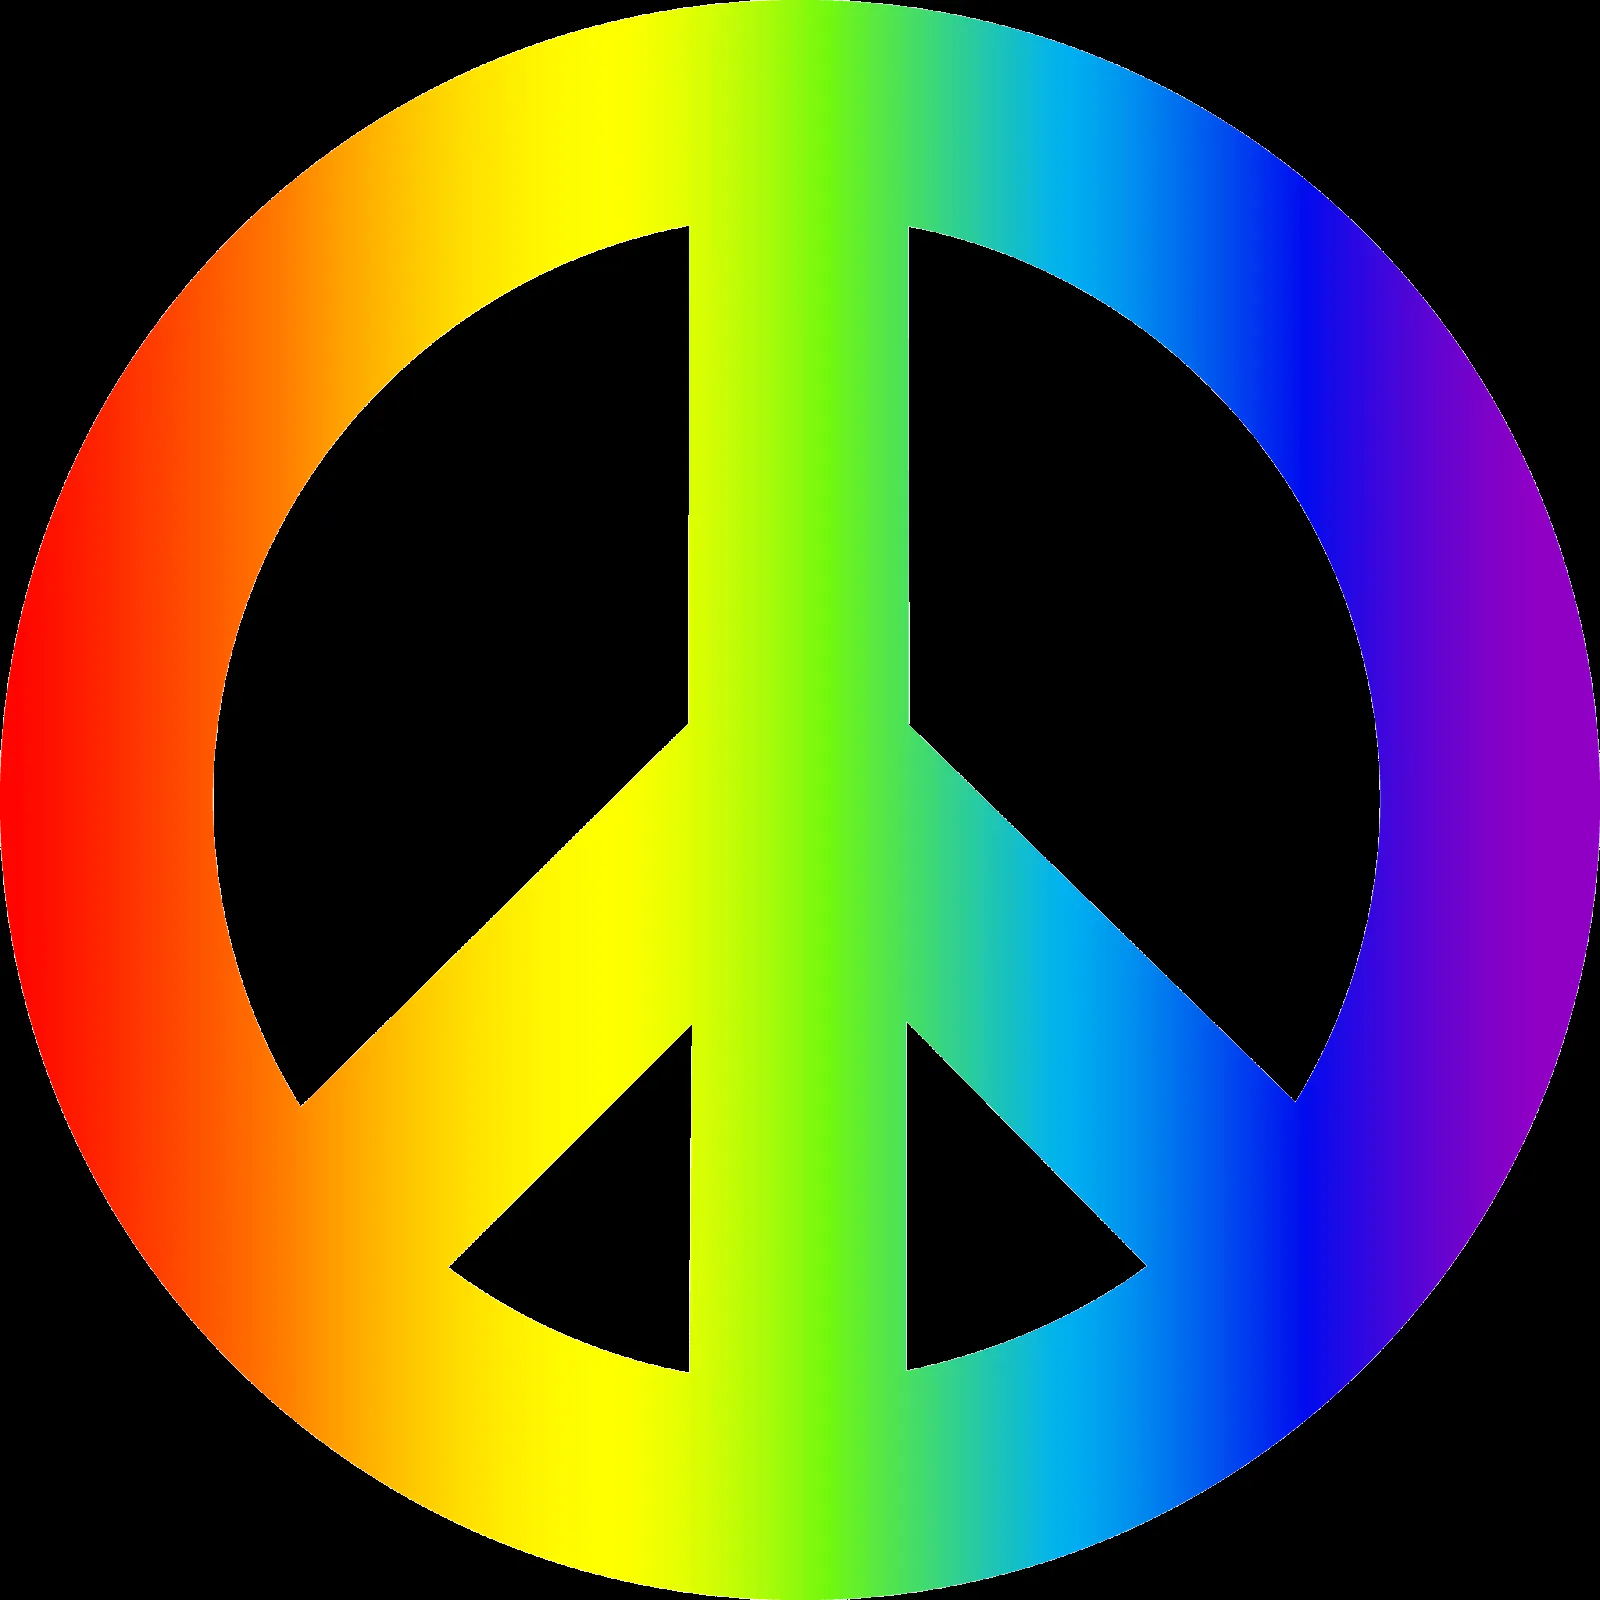 Imagenes y fotos: Simbolos de la Paz, parte 1 | símbolo de la paz ...